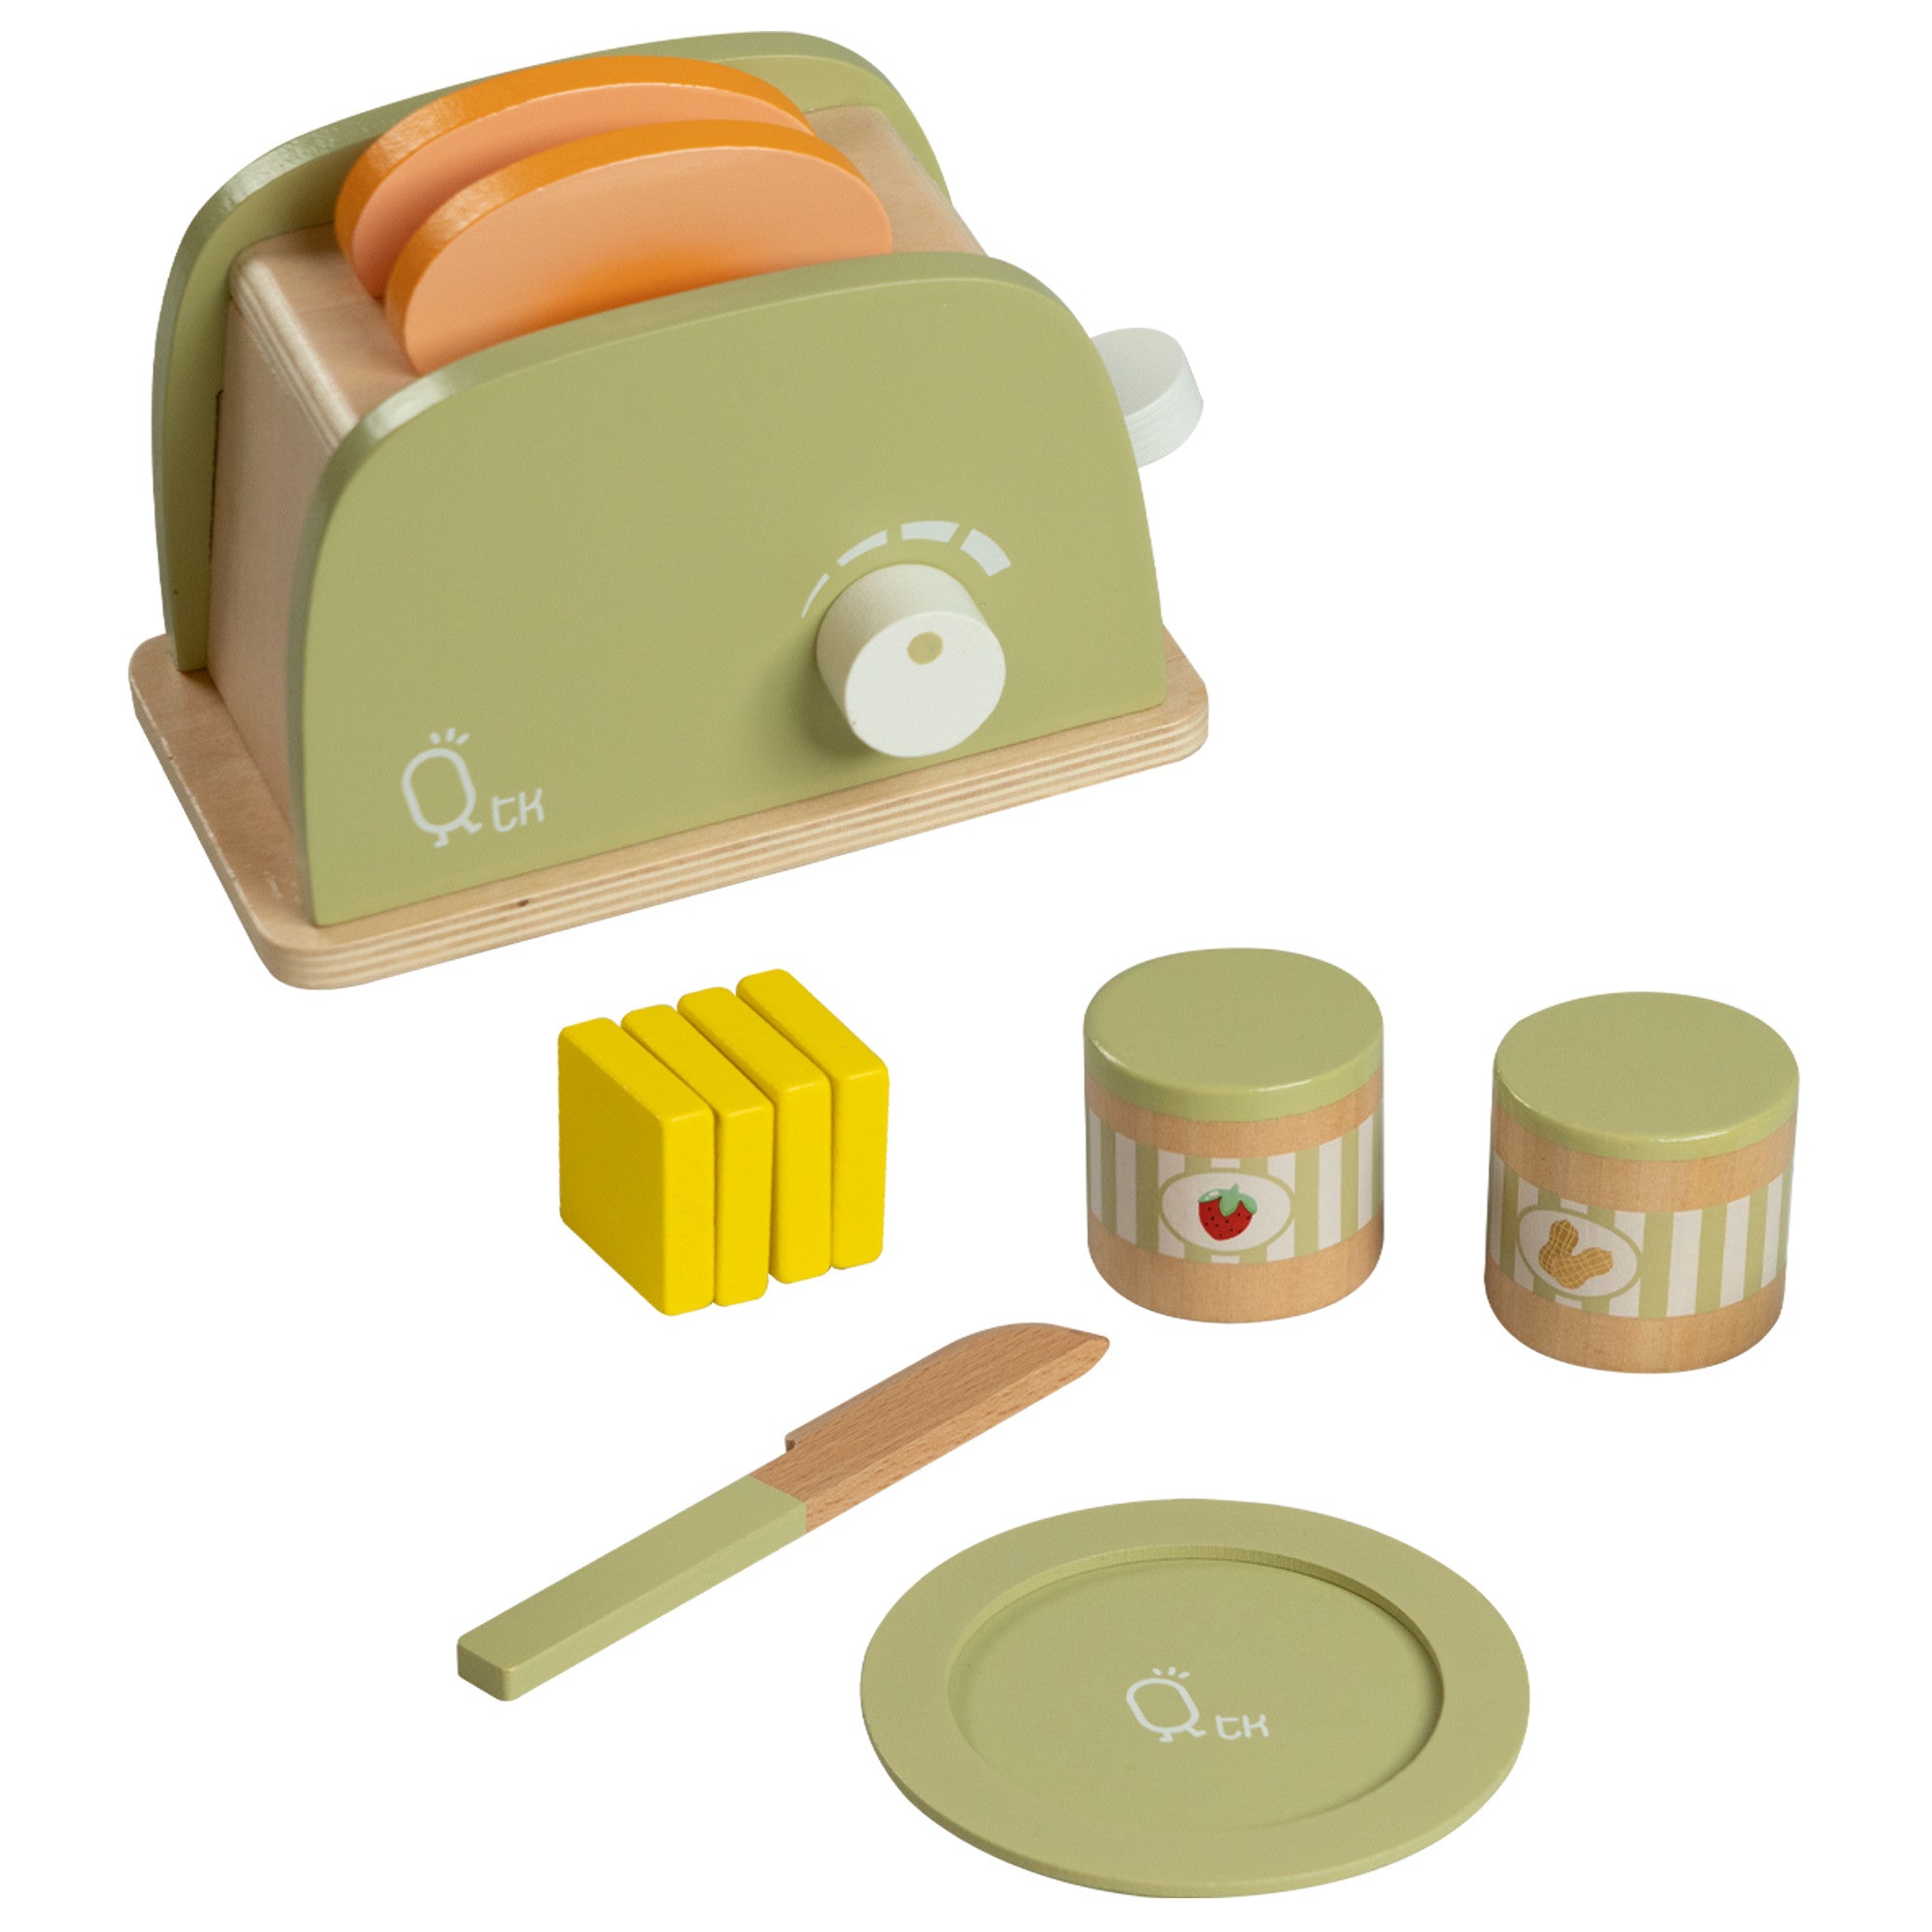 Teamson Kids Little Chef Frankfurt Wooden Mixer Play Kitchen Accessories, Green